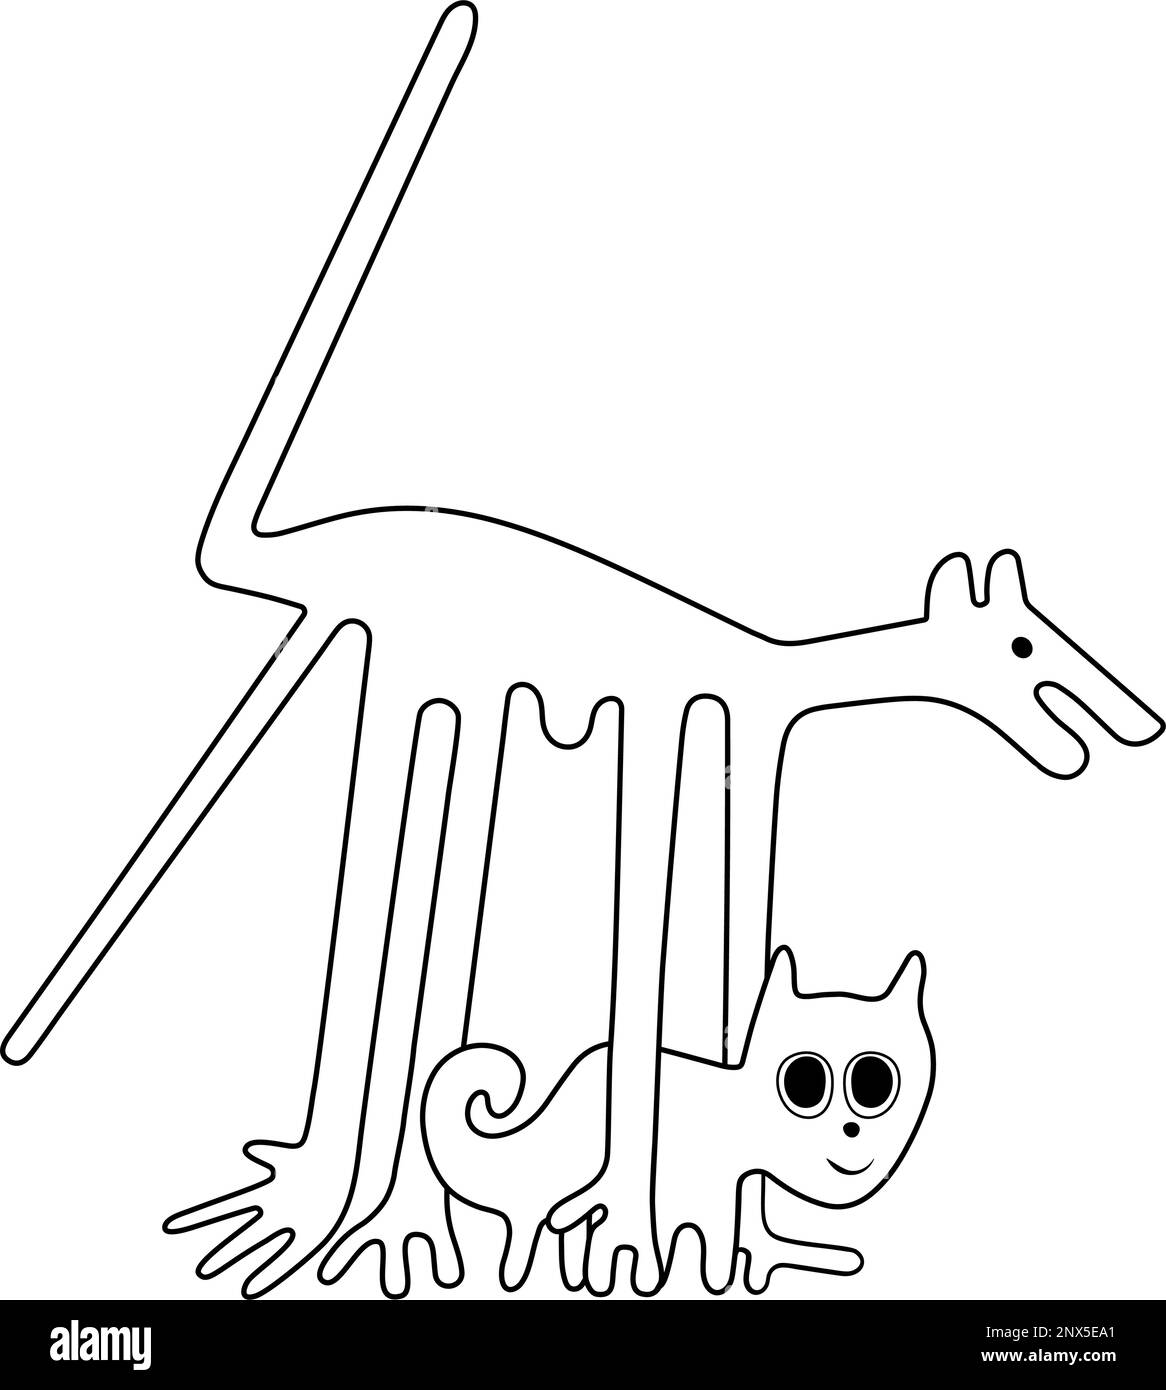 Le chien et le chat - une paraphrase des célèbres géoglyphes de Nazca Illustration de Vecteur